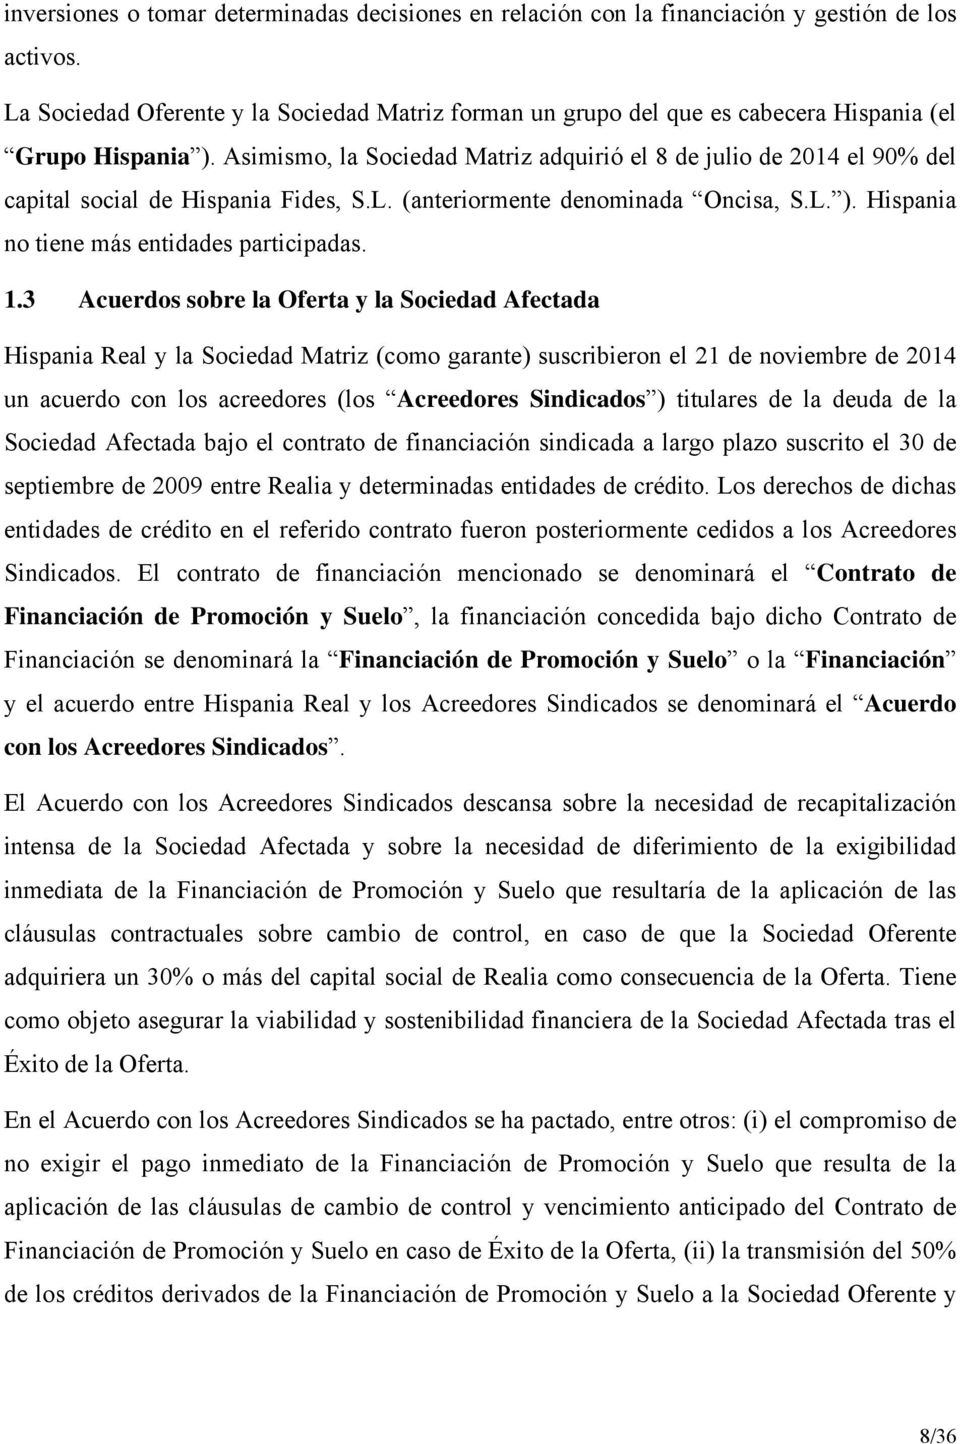 Asimismo, la Sociedad Matriz adquirió el 8 de julio de 2014 el 90% del capital social de Hispania Fides, S.L. (anteriormente denominada Oncisa, S.L. ). Hispania no tiene más entidades participadas. 1.